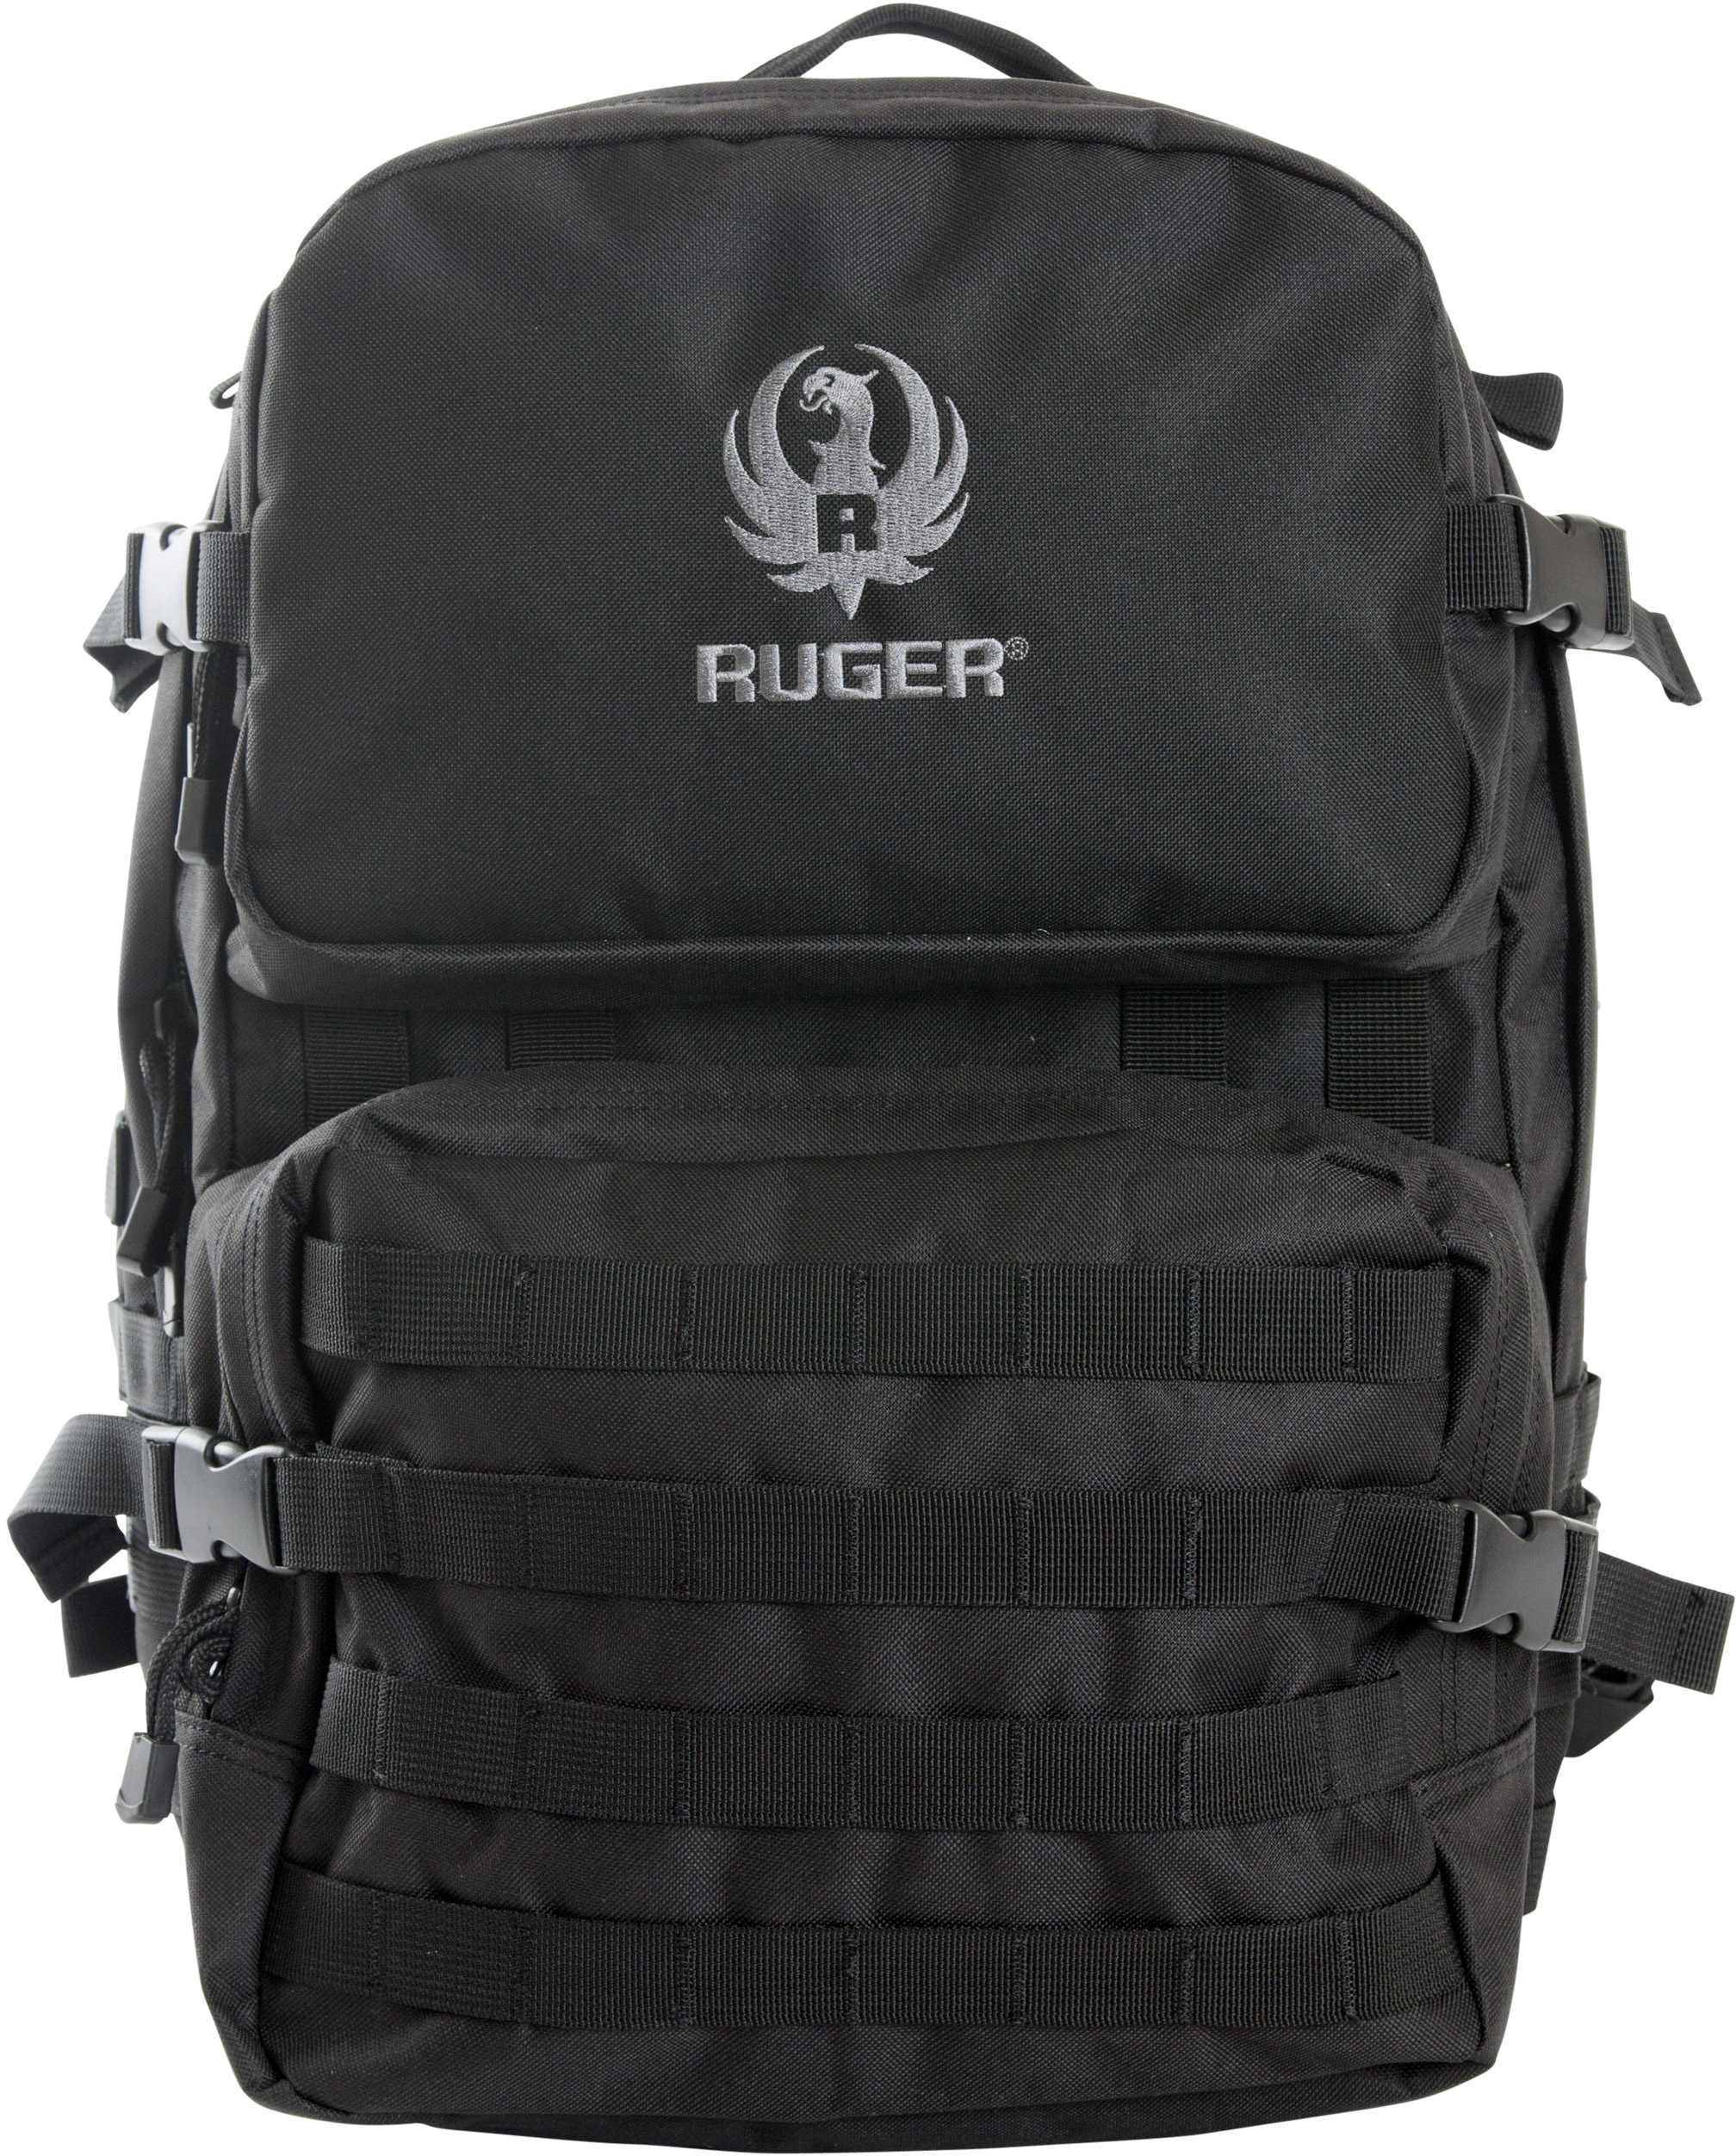 Allen Cases Ruger Barricade Tactical Pack Black Md: 27962